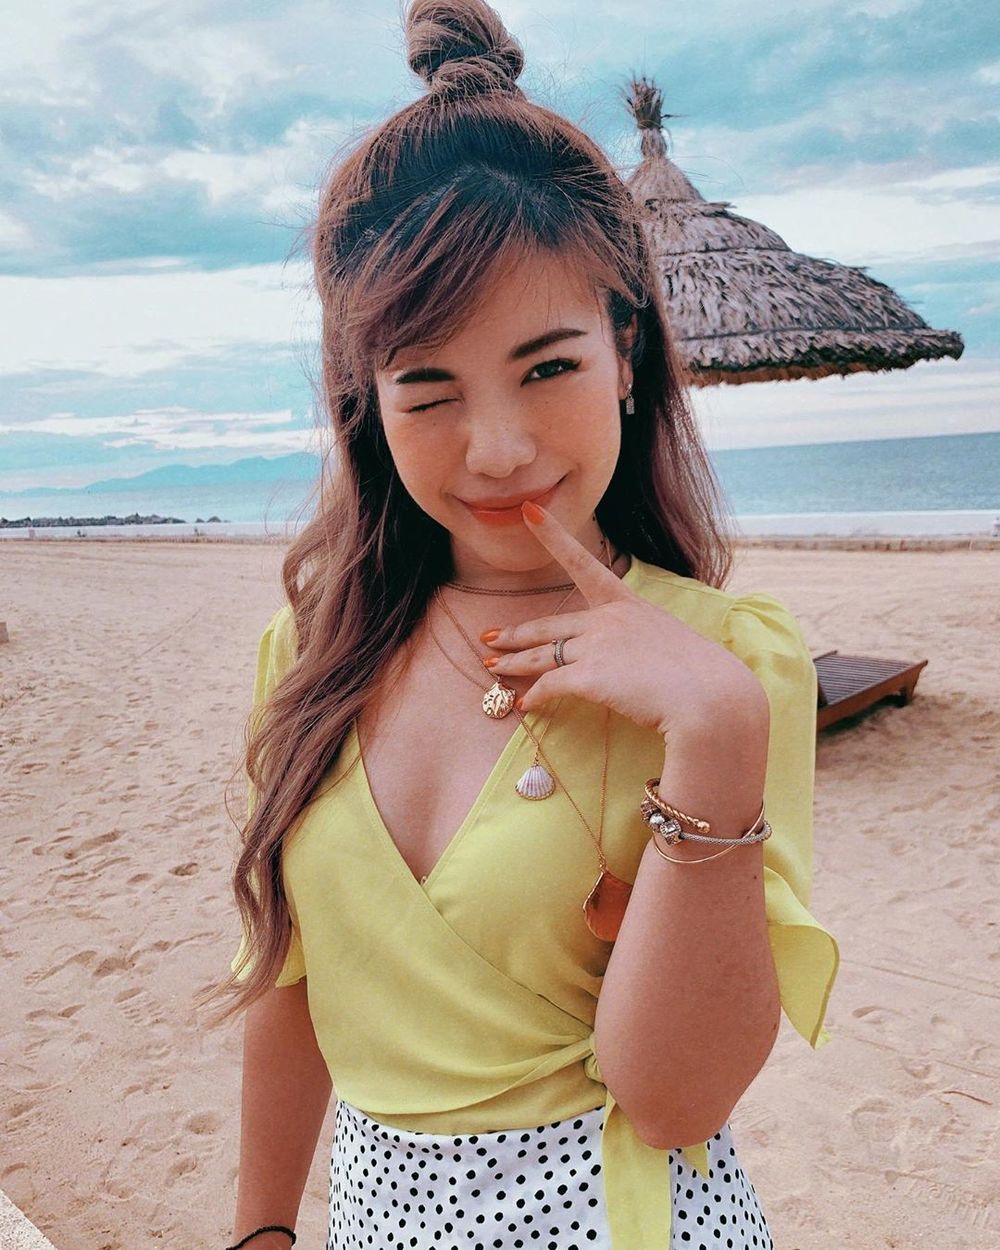 Học vấn của YouTuber Việt: Changmakeup đạt học bổng toàn phần tại Mỹ, ViruSs du học hơn 8 nước - Tin sao Viet - Tin tuc sao Viet - Scandal sao Viet - Tin tuc cua Sao - Tin cua Sao